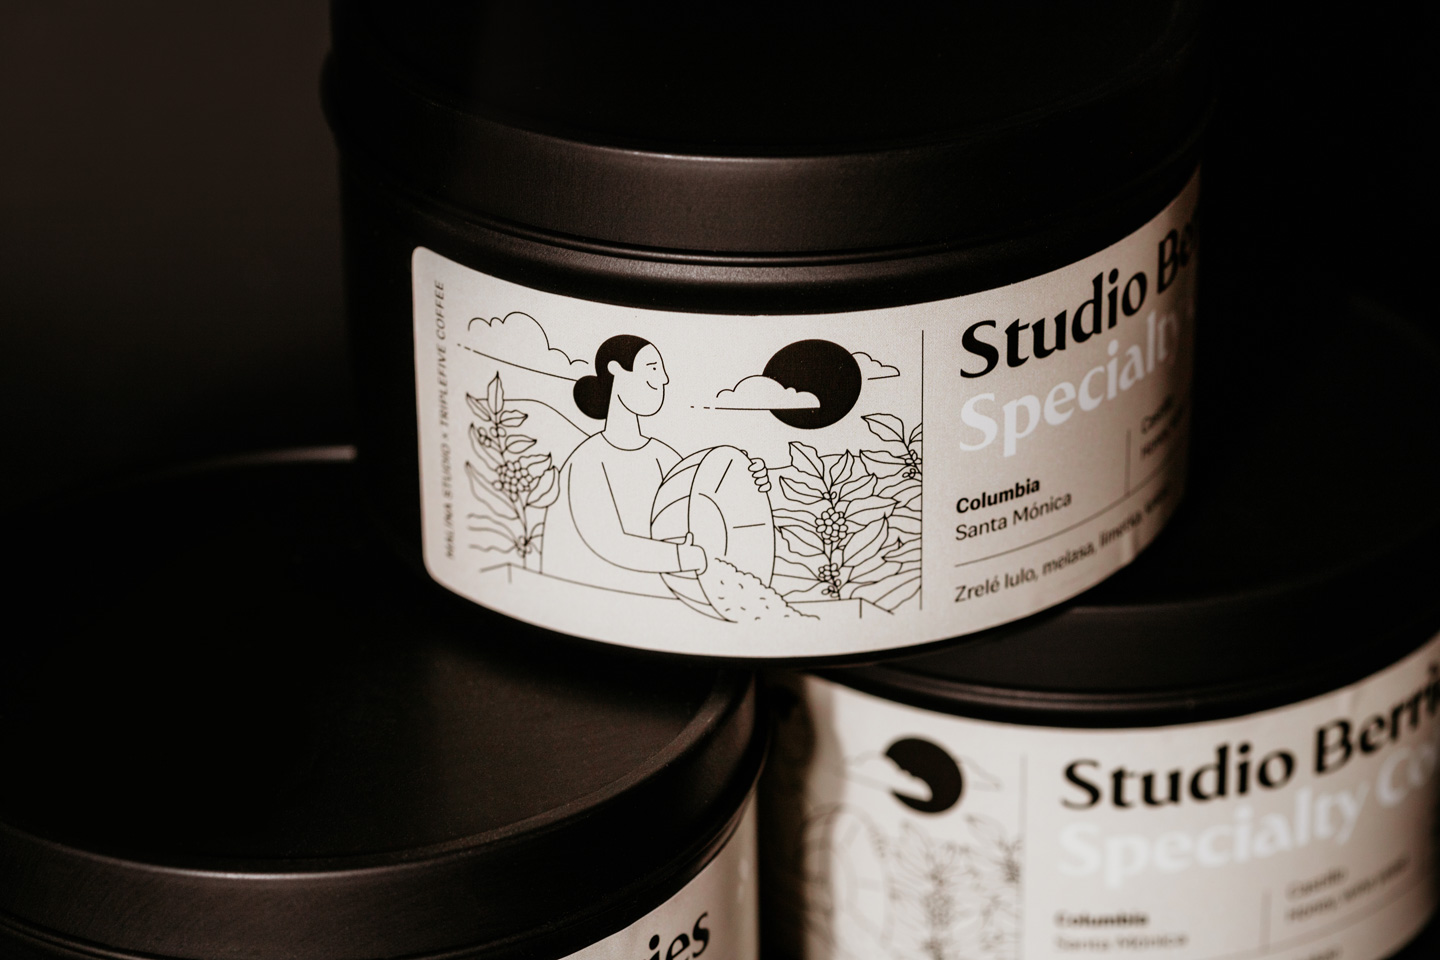 studioberries_coffee_packaging_3